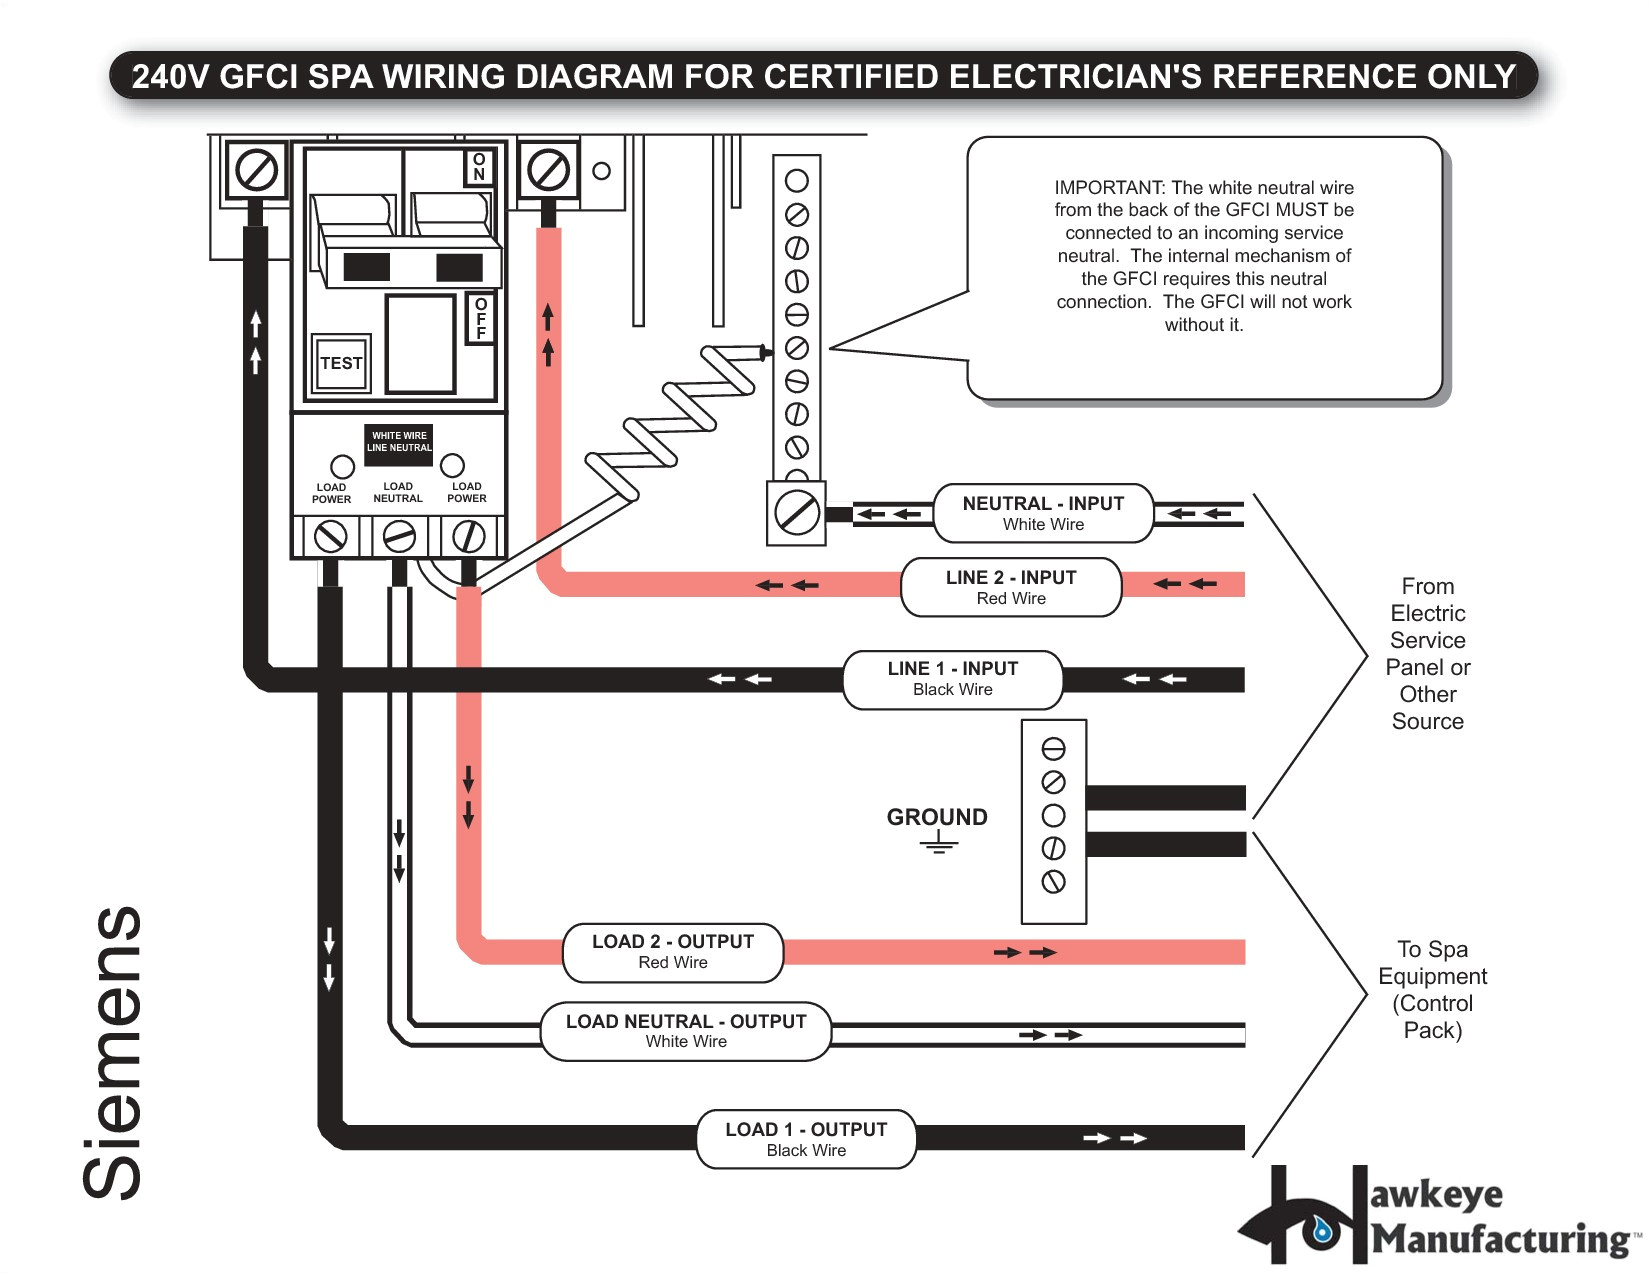 schematic wiring 3 wires wiring diagram usedschematic wiring 3 wires wiring diagram query gfci schematic wiring